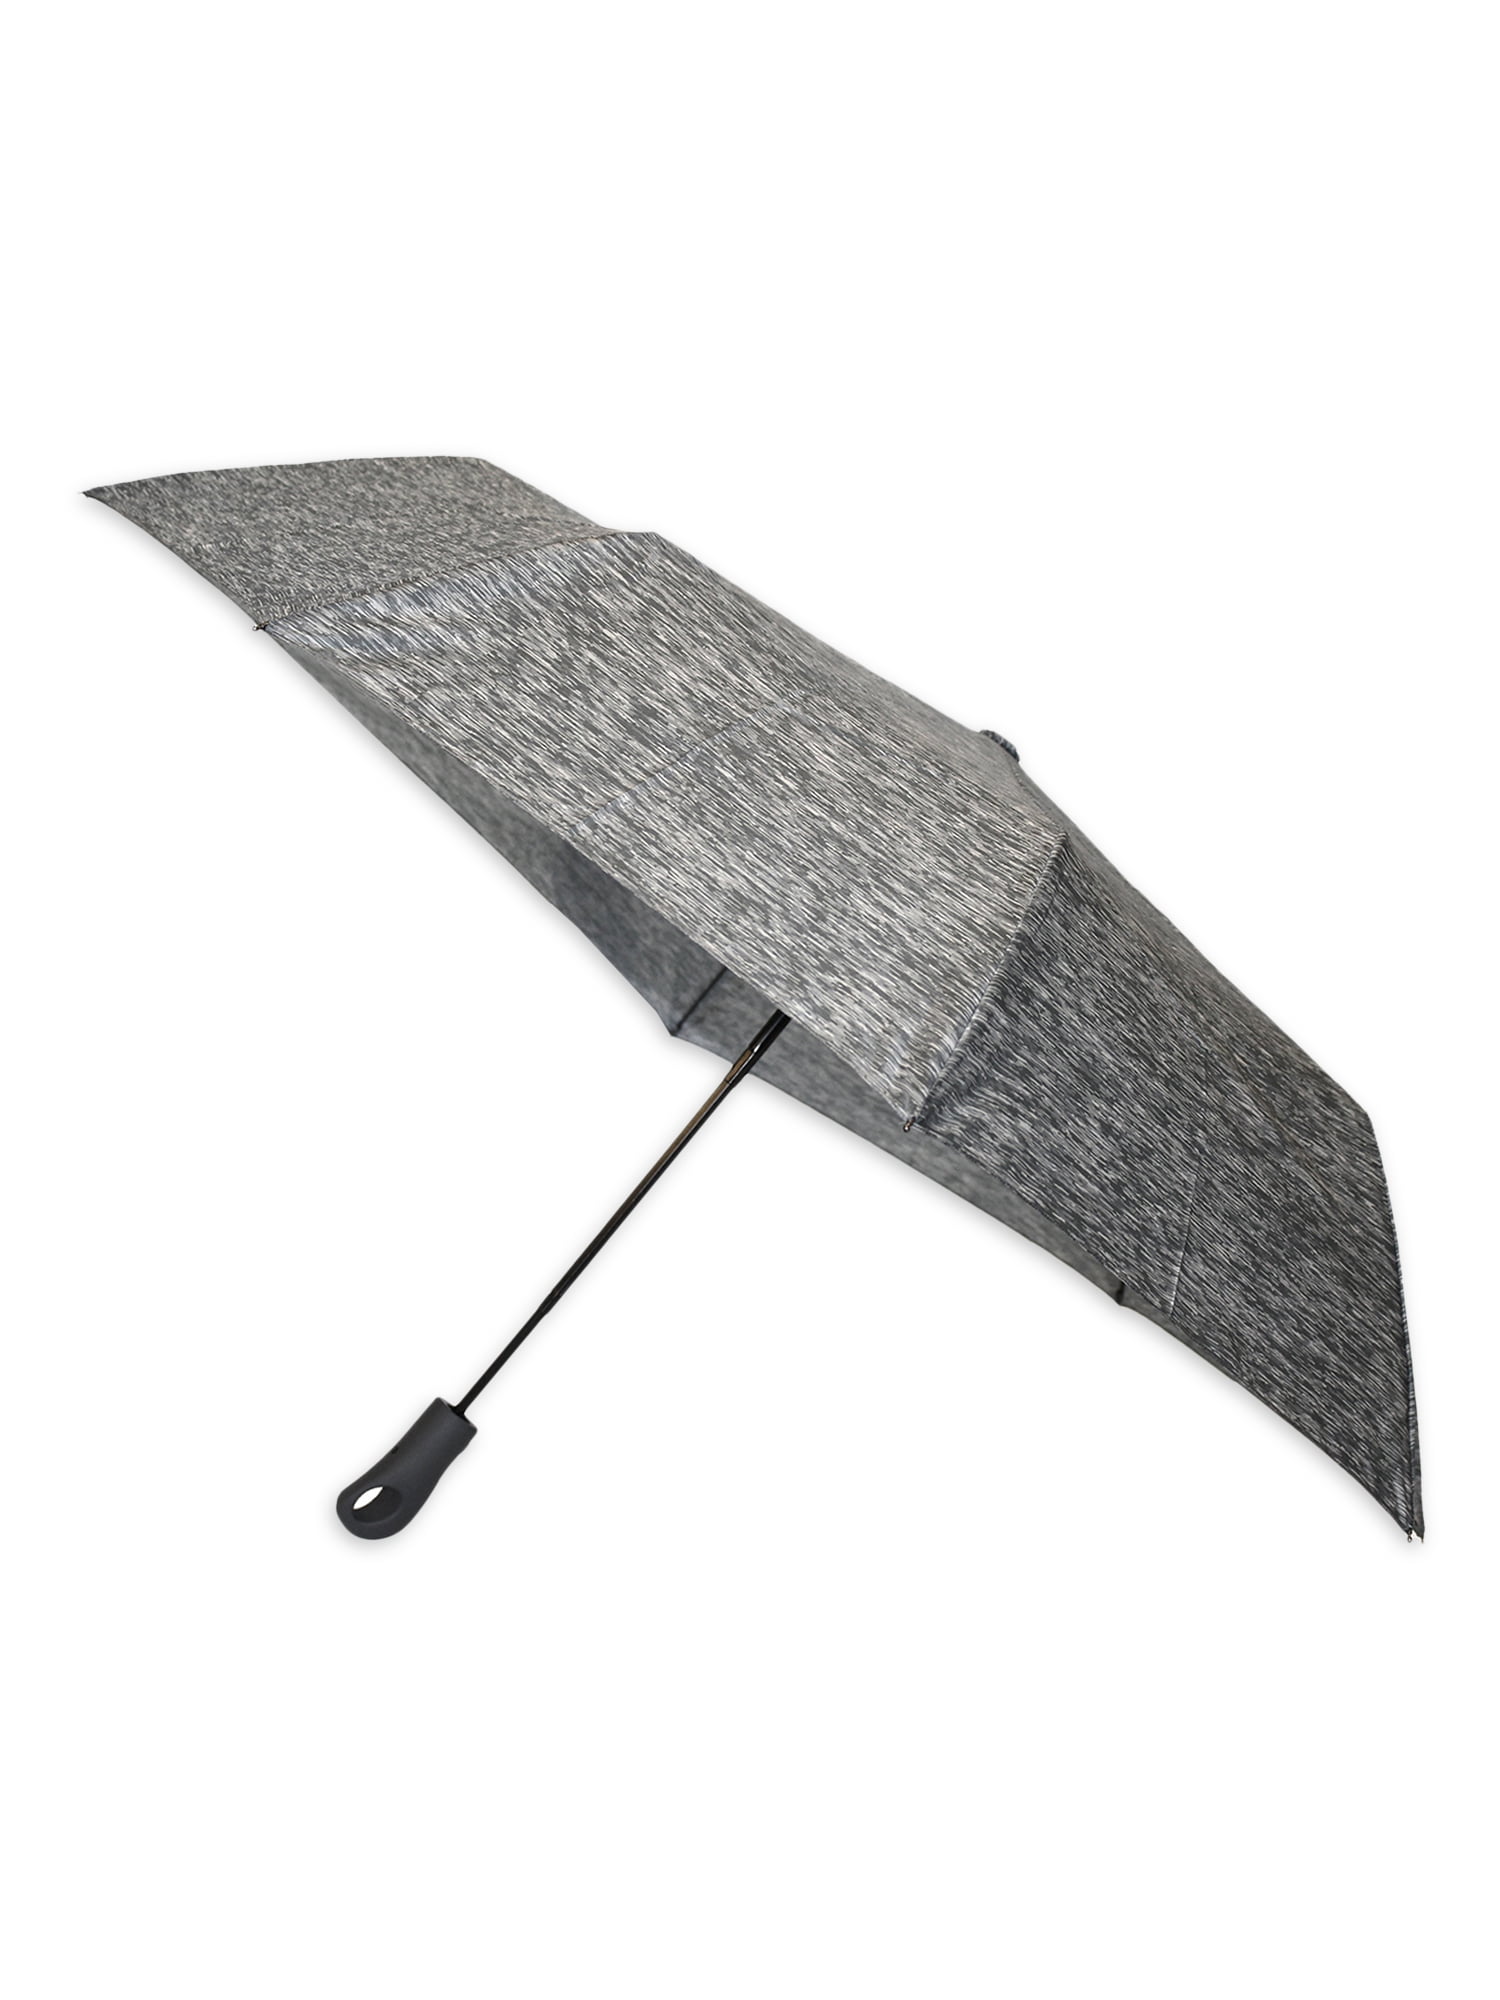 Misty Harbor Adult Unisex Umbrella